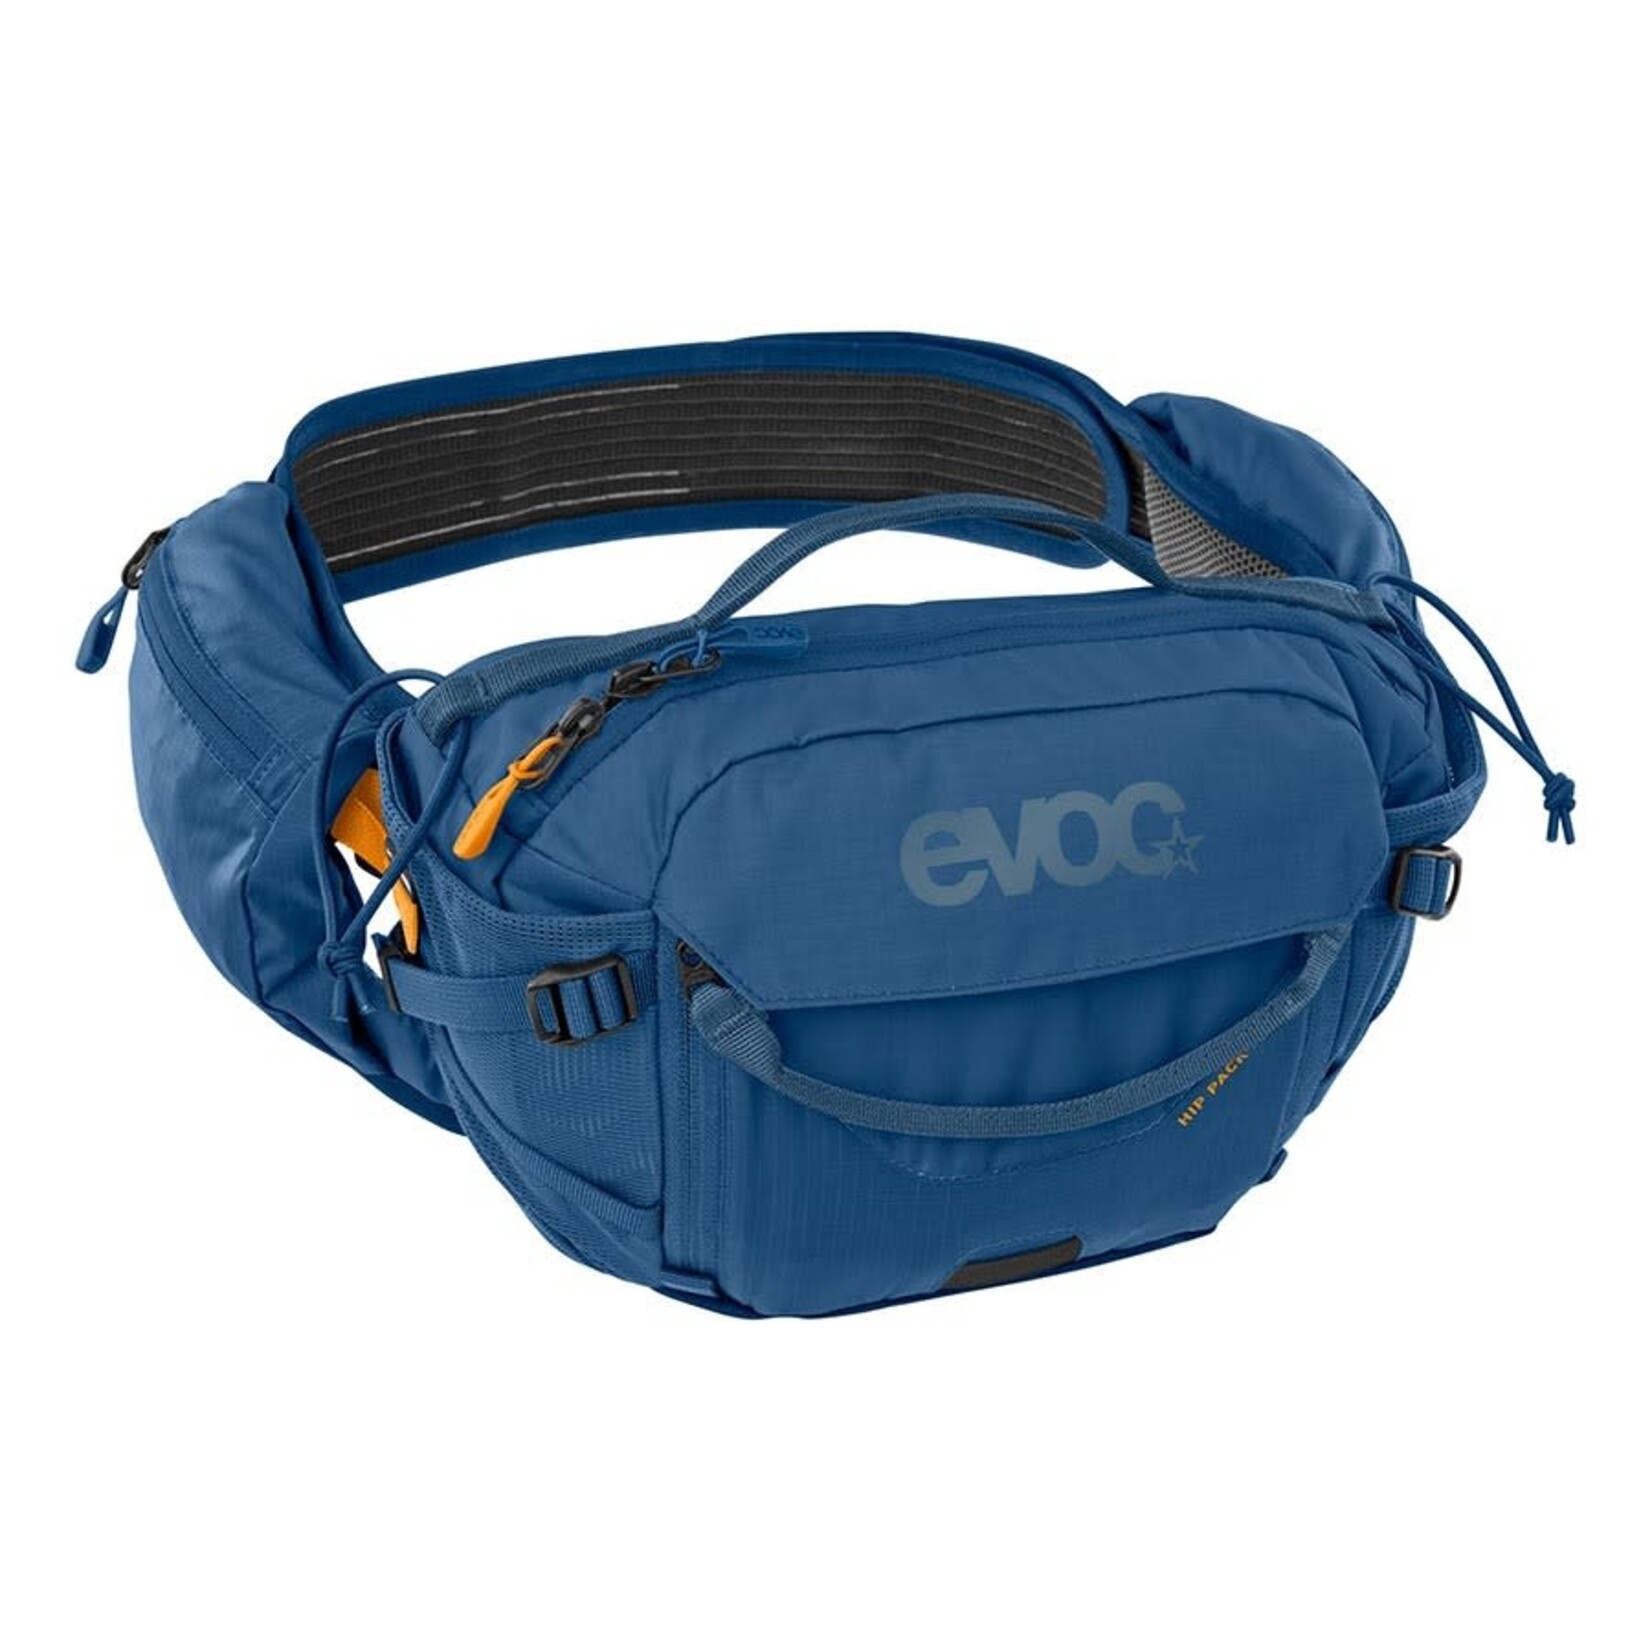 EVOC EVOC Hip Pack Pro + 1.5L Bladder Hydration Bag Denim